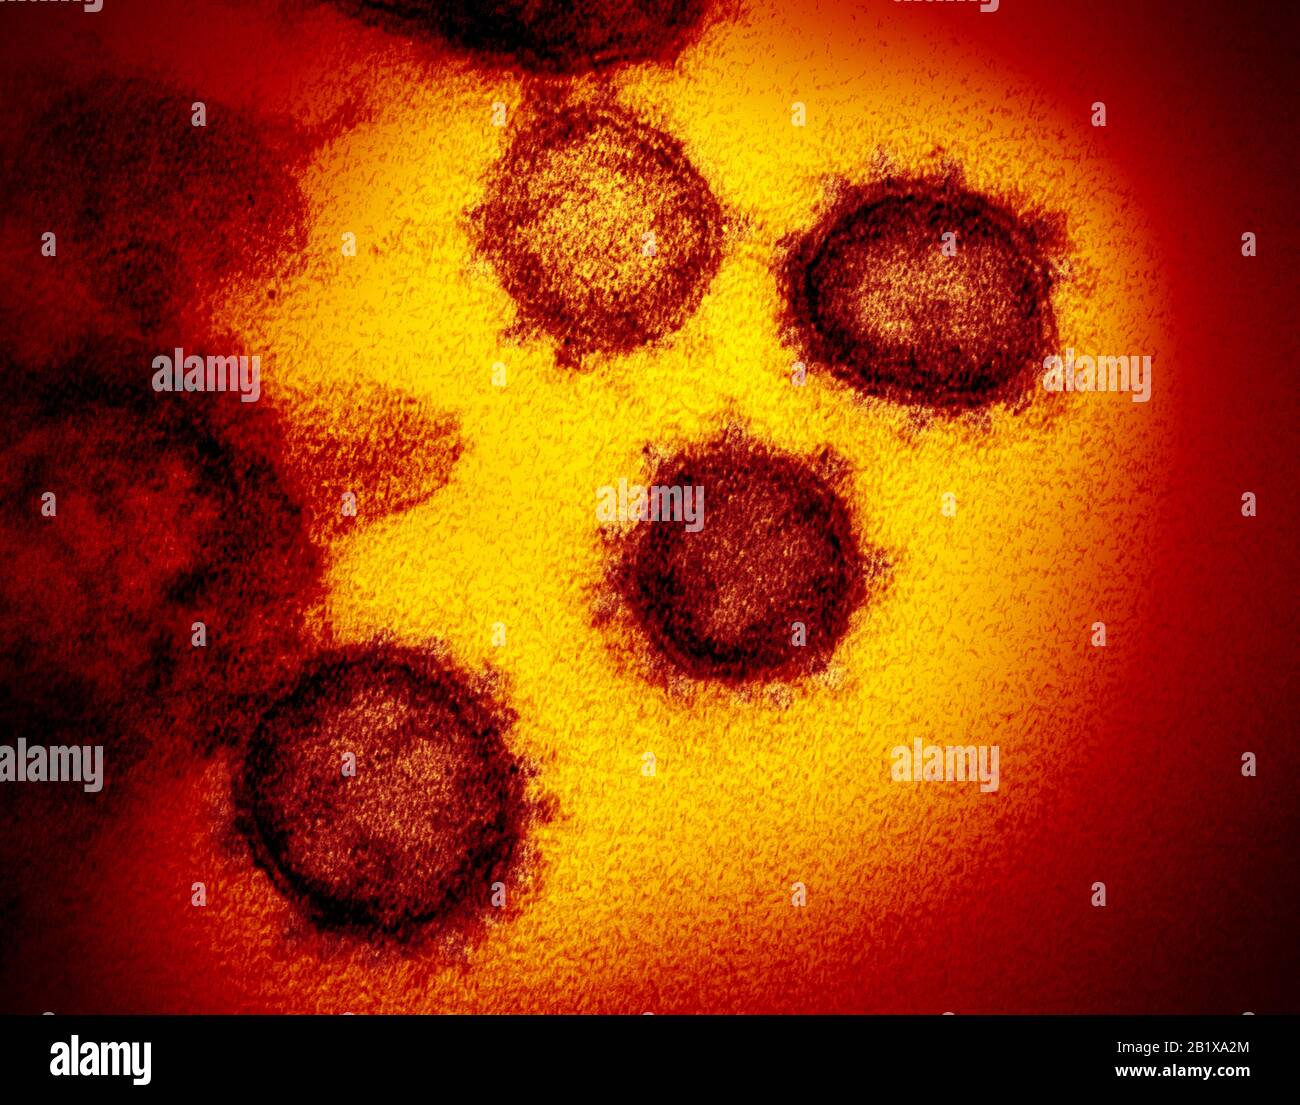 COVID-19. Roman Coronavirus SRAS-CoV-2.Cette image au microscope électronique de transmission montre le SRAS-CoV-2—également connu sous le nom de 2019-nCoV, le virus qui cause COVID-19. Isolé d'un patient aux États-Unis, émergeant de la surface des cellules cultivées en laboratoire. Crédit : NIID-RML Banque D'Images